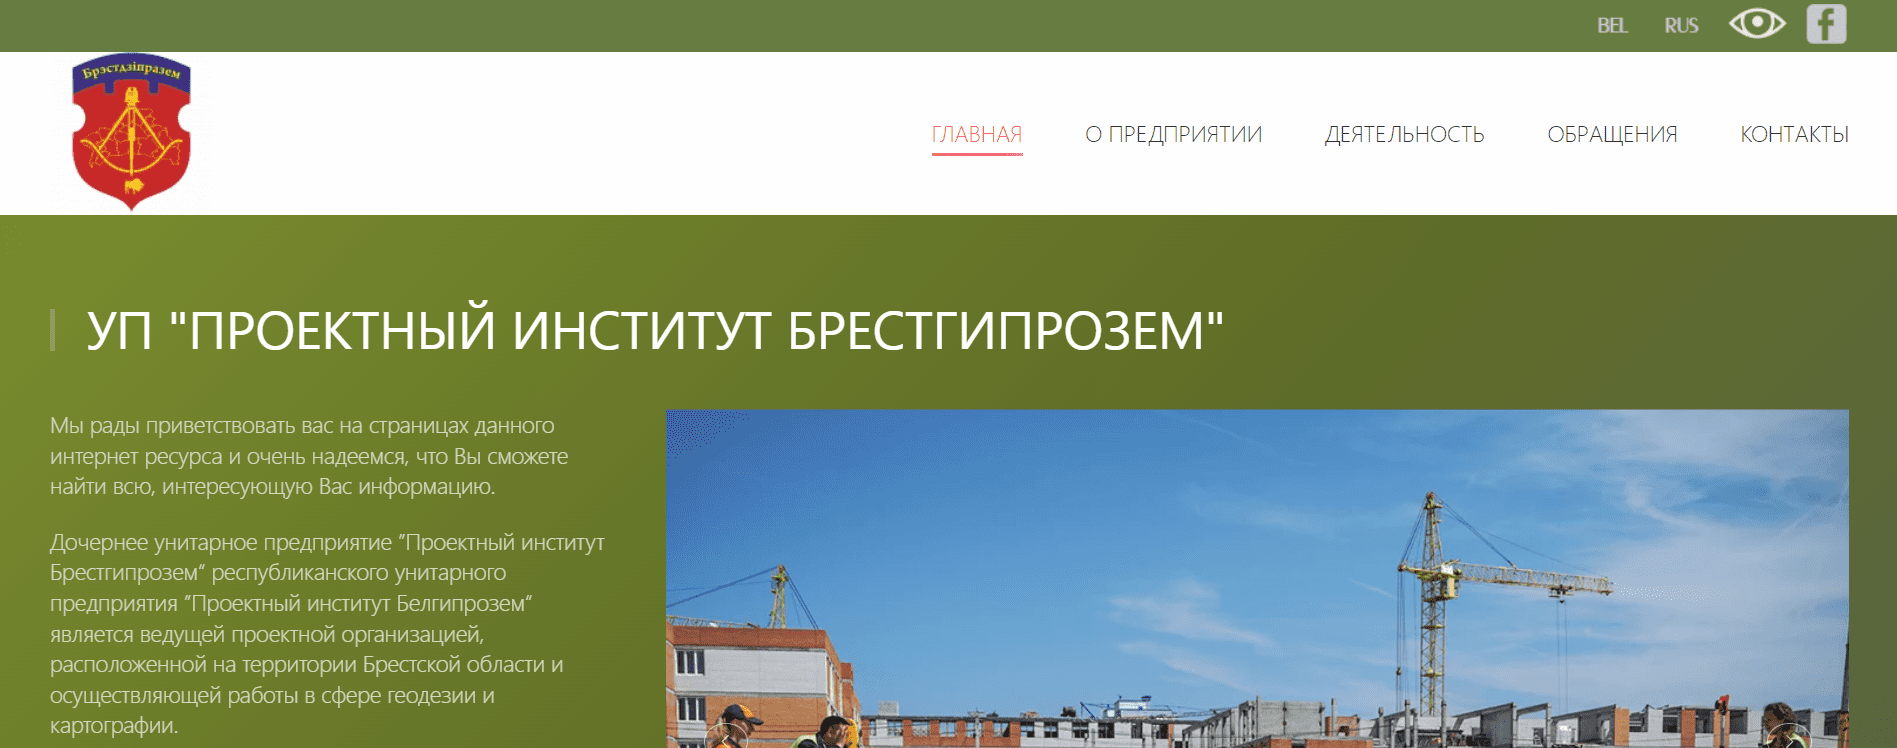 Проектный институт Брестгипрозем (brestgiprozem.by) - официальный сайт